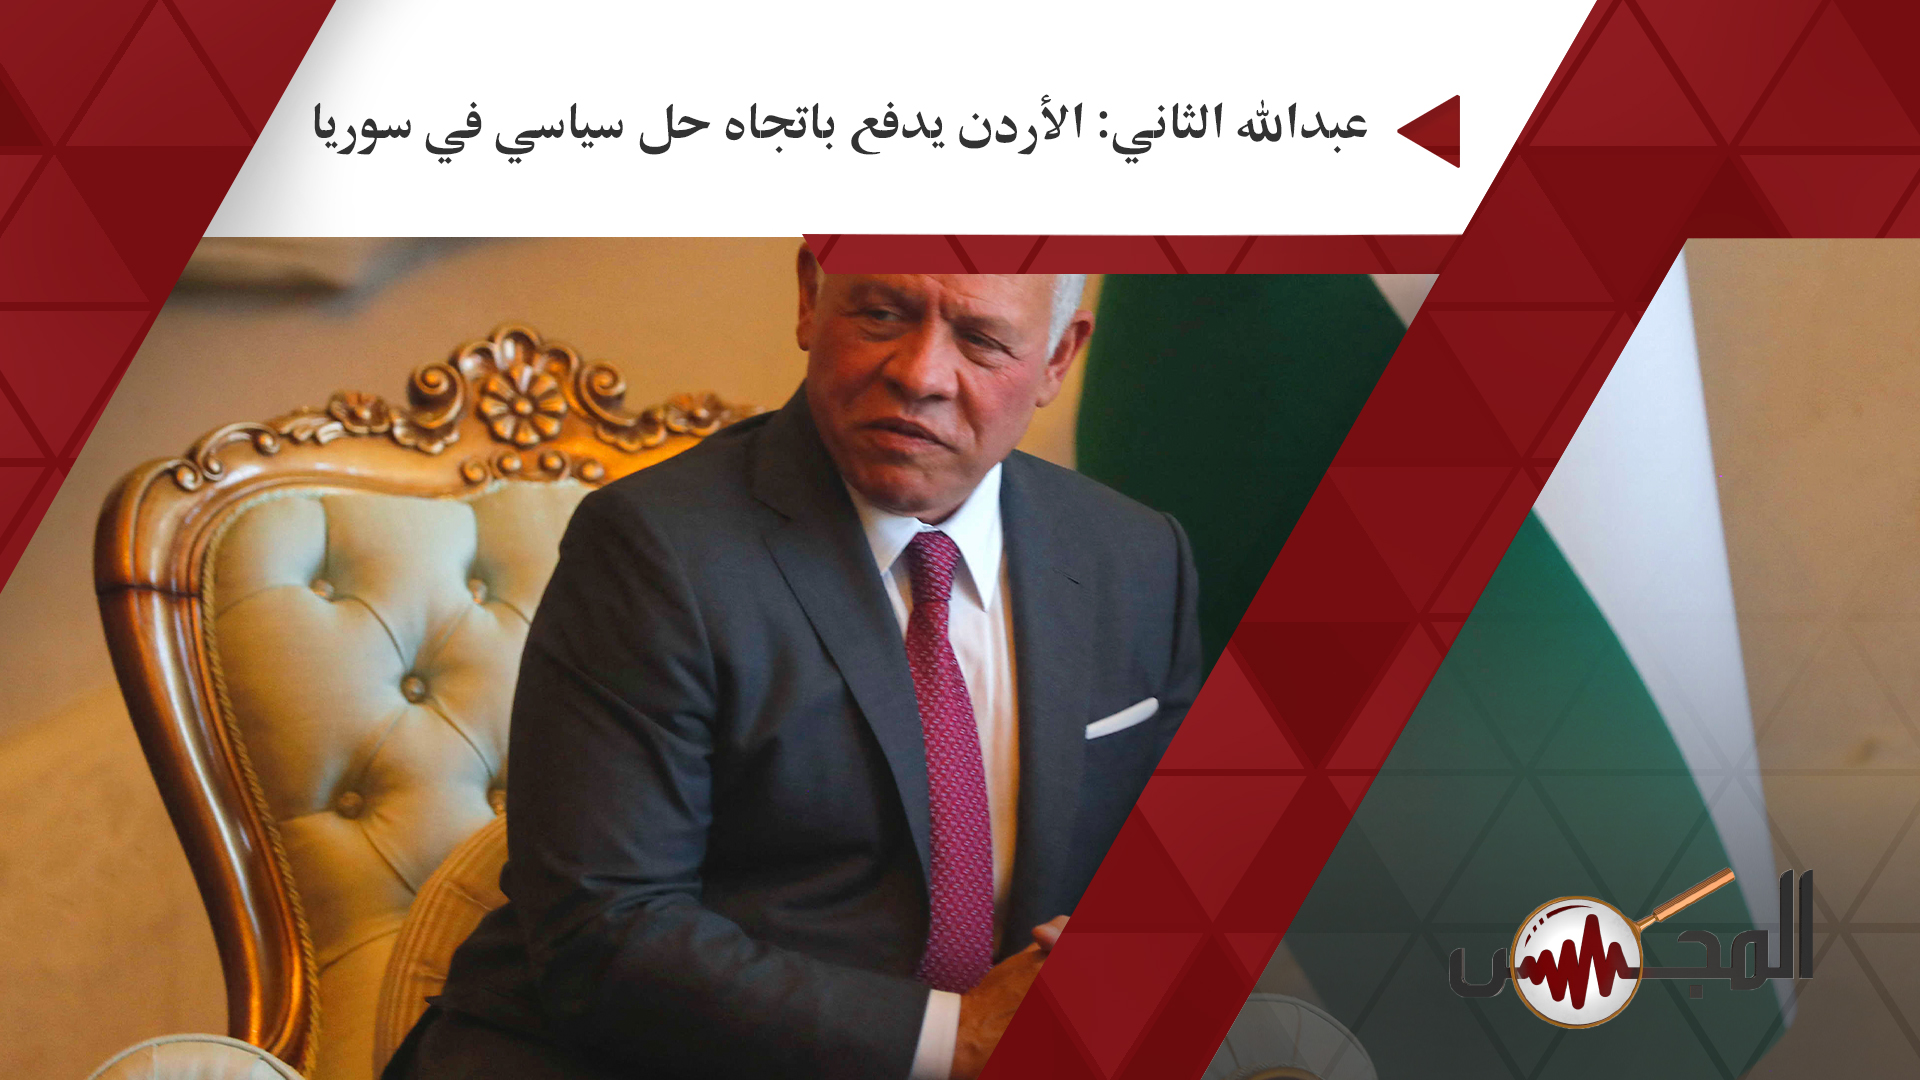 عبدالله الثاني: الأردن يدفع باتجاه حل سياسي في سوريا